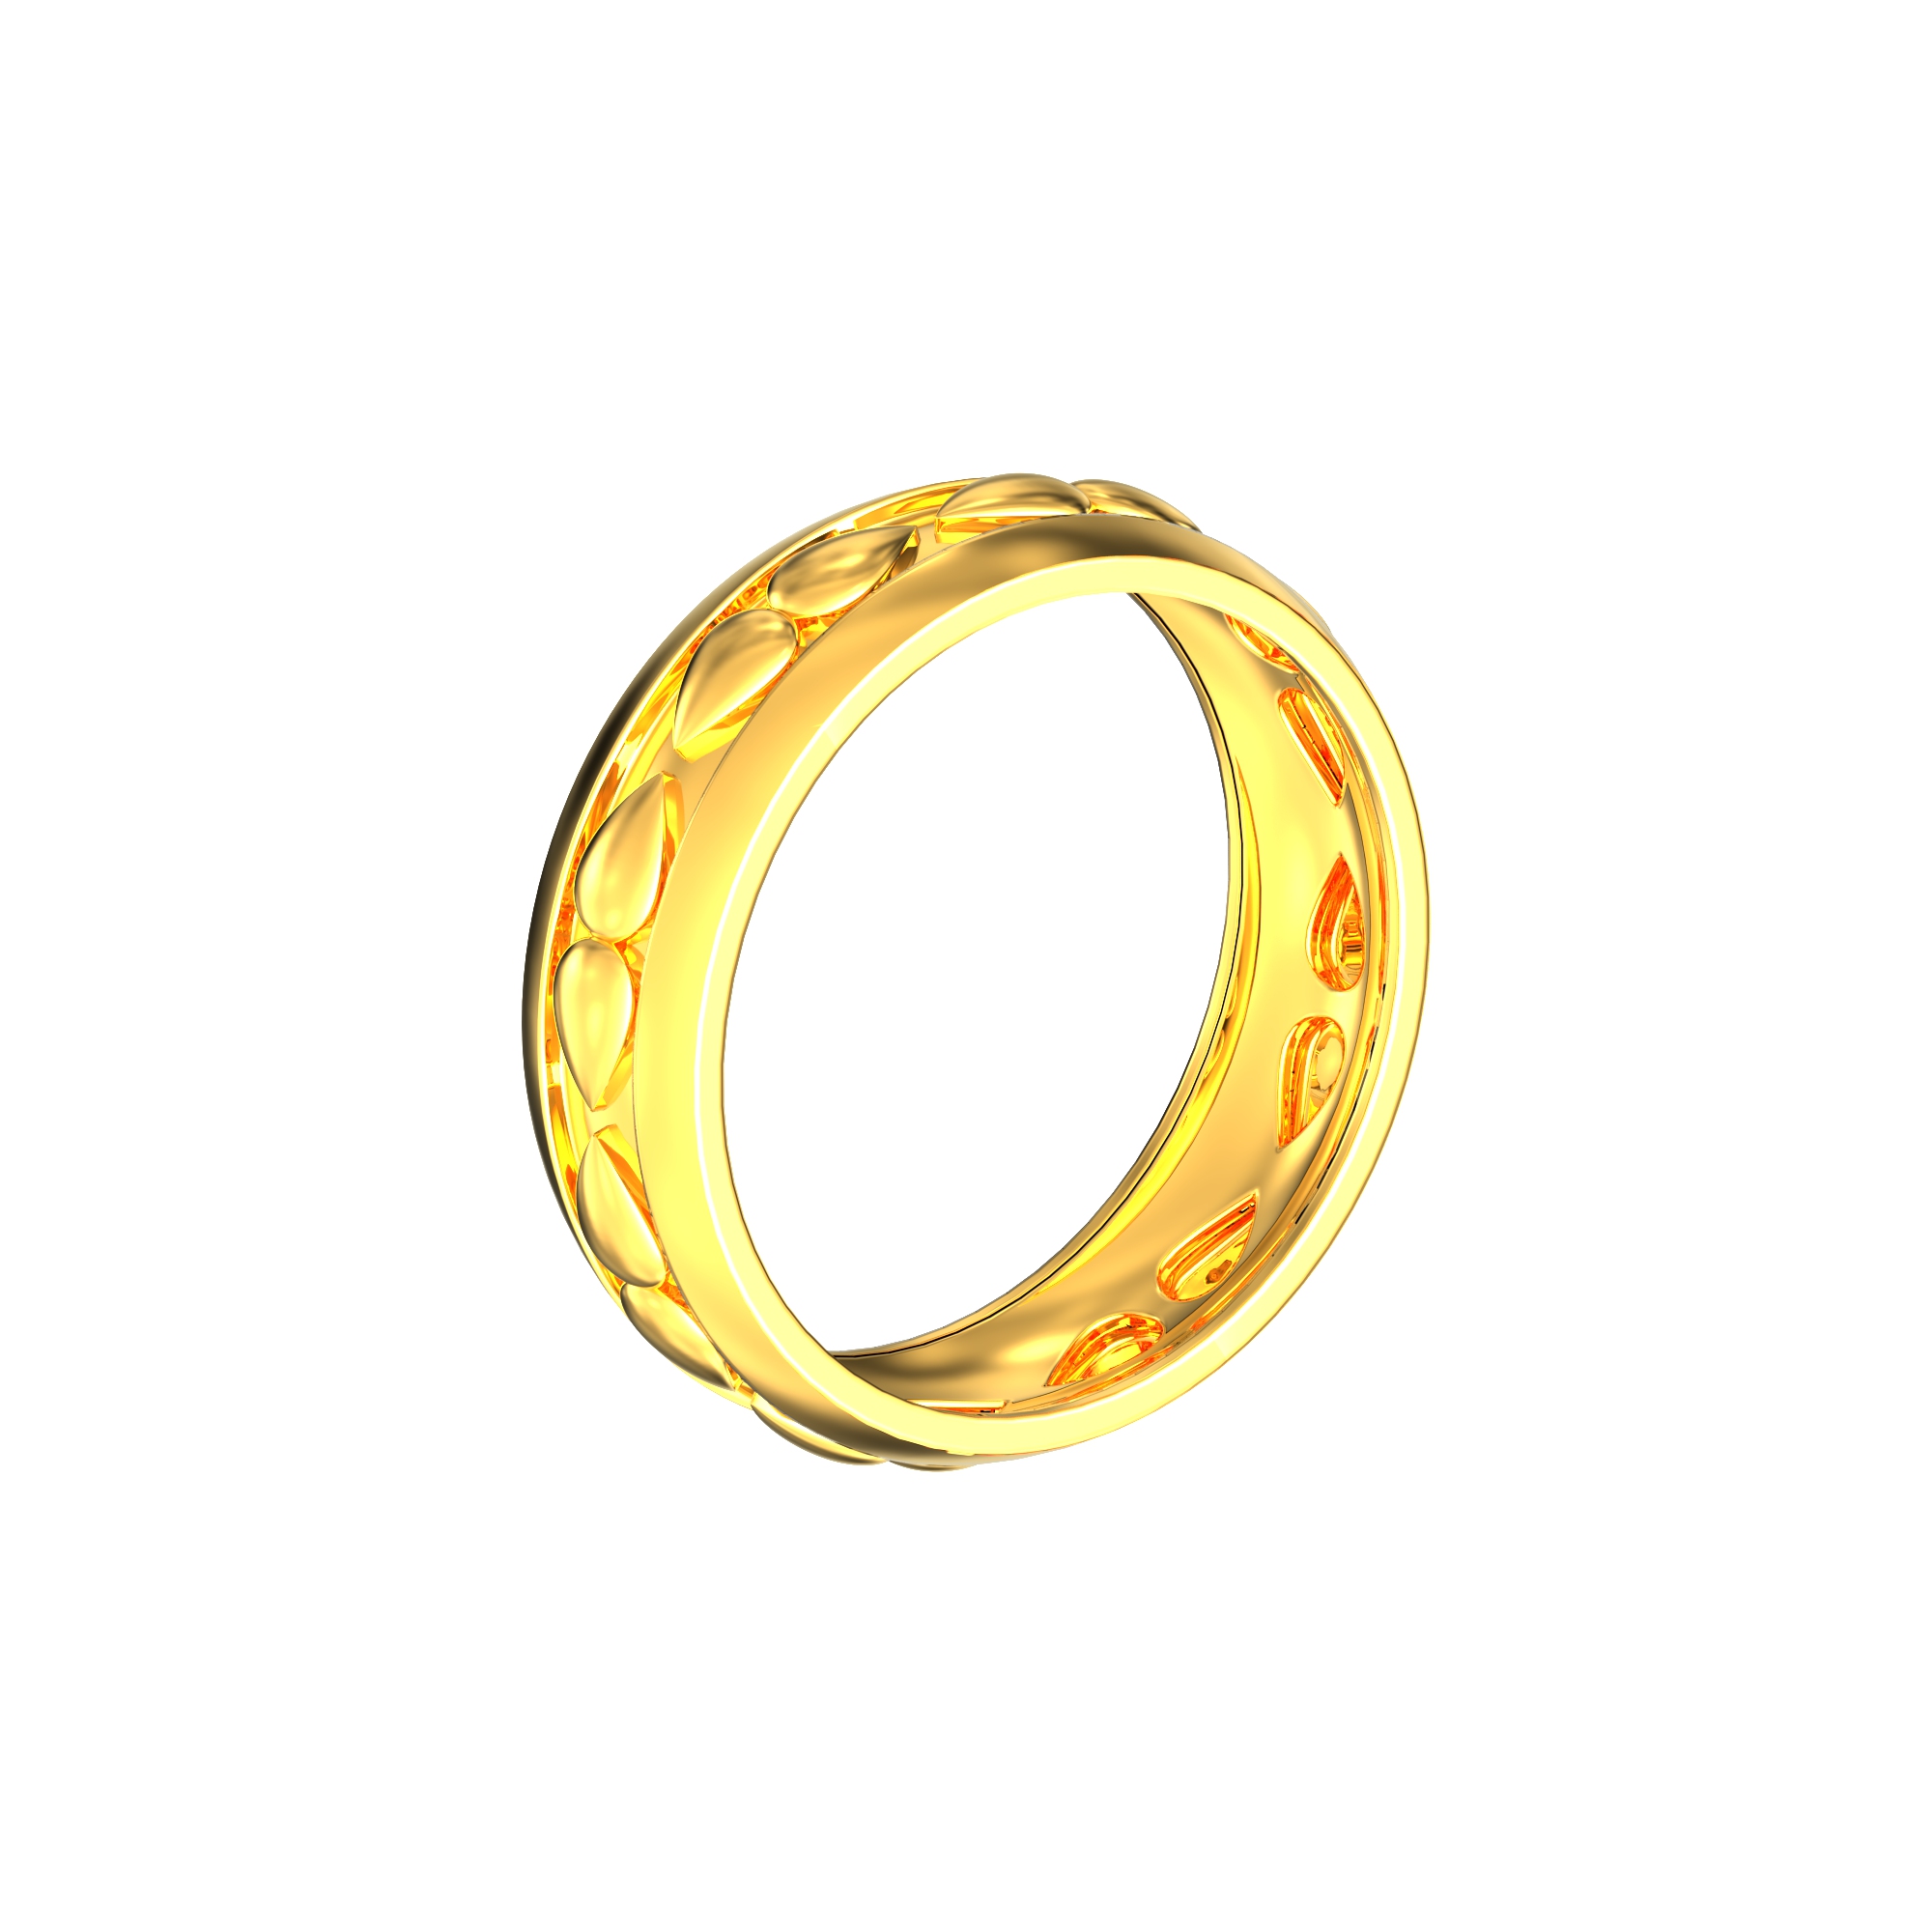 Buy 22KT Gold Ring for Men | New Mens Gold Rings Design - PC Chandra-saigonsouth.com.vn